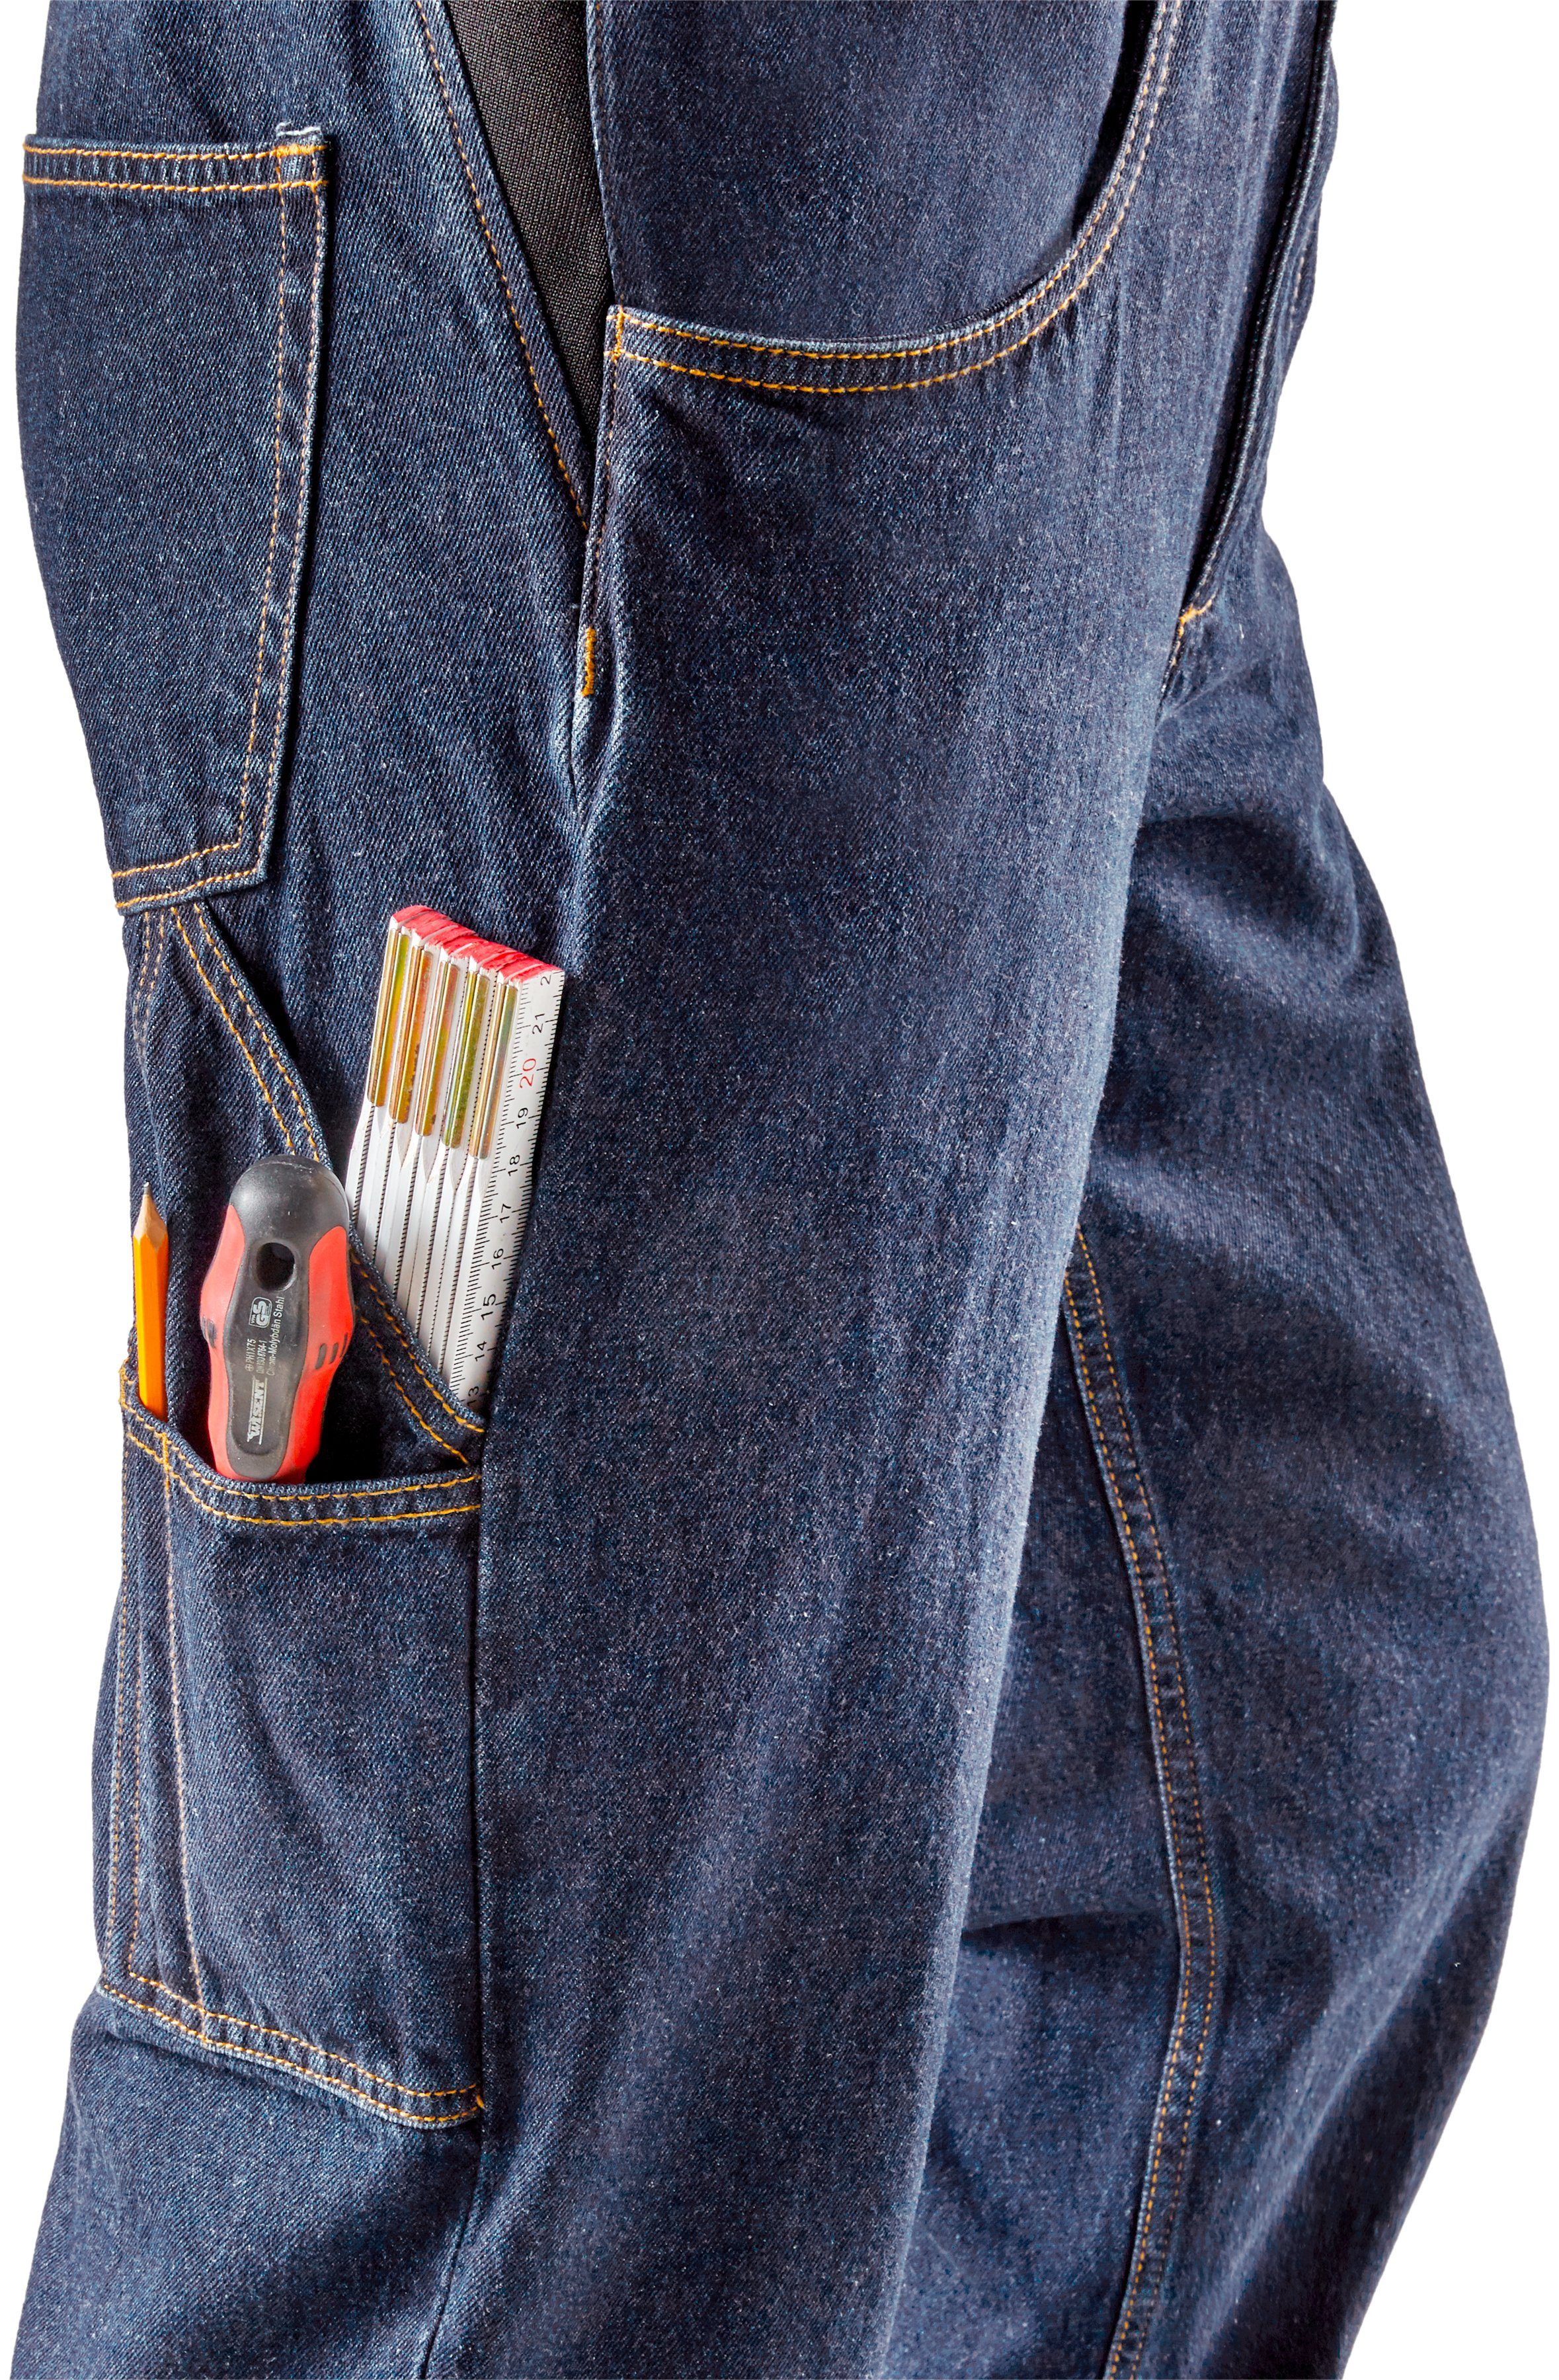 Baumwolle, strapazierfähig und Northern dehnbarem comfort 100% 11 robuster Latzhose langlebig (aus Bund, fit) Country Jeansstoff, Worker Taschen, mit Jeans